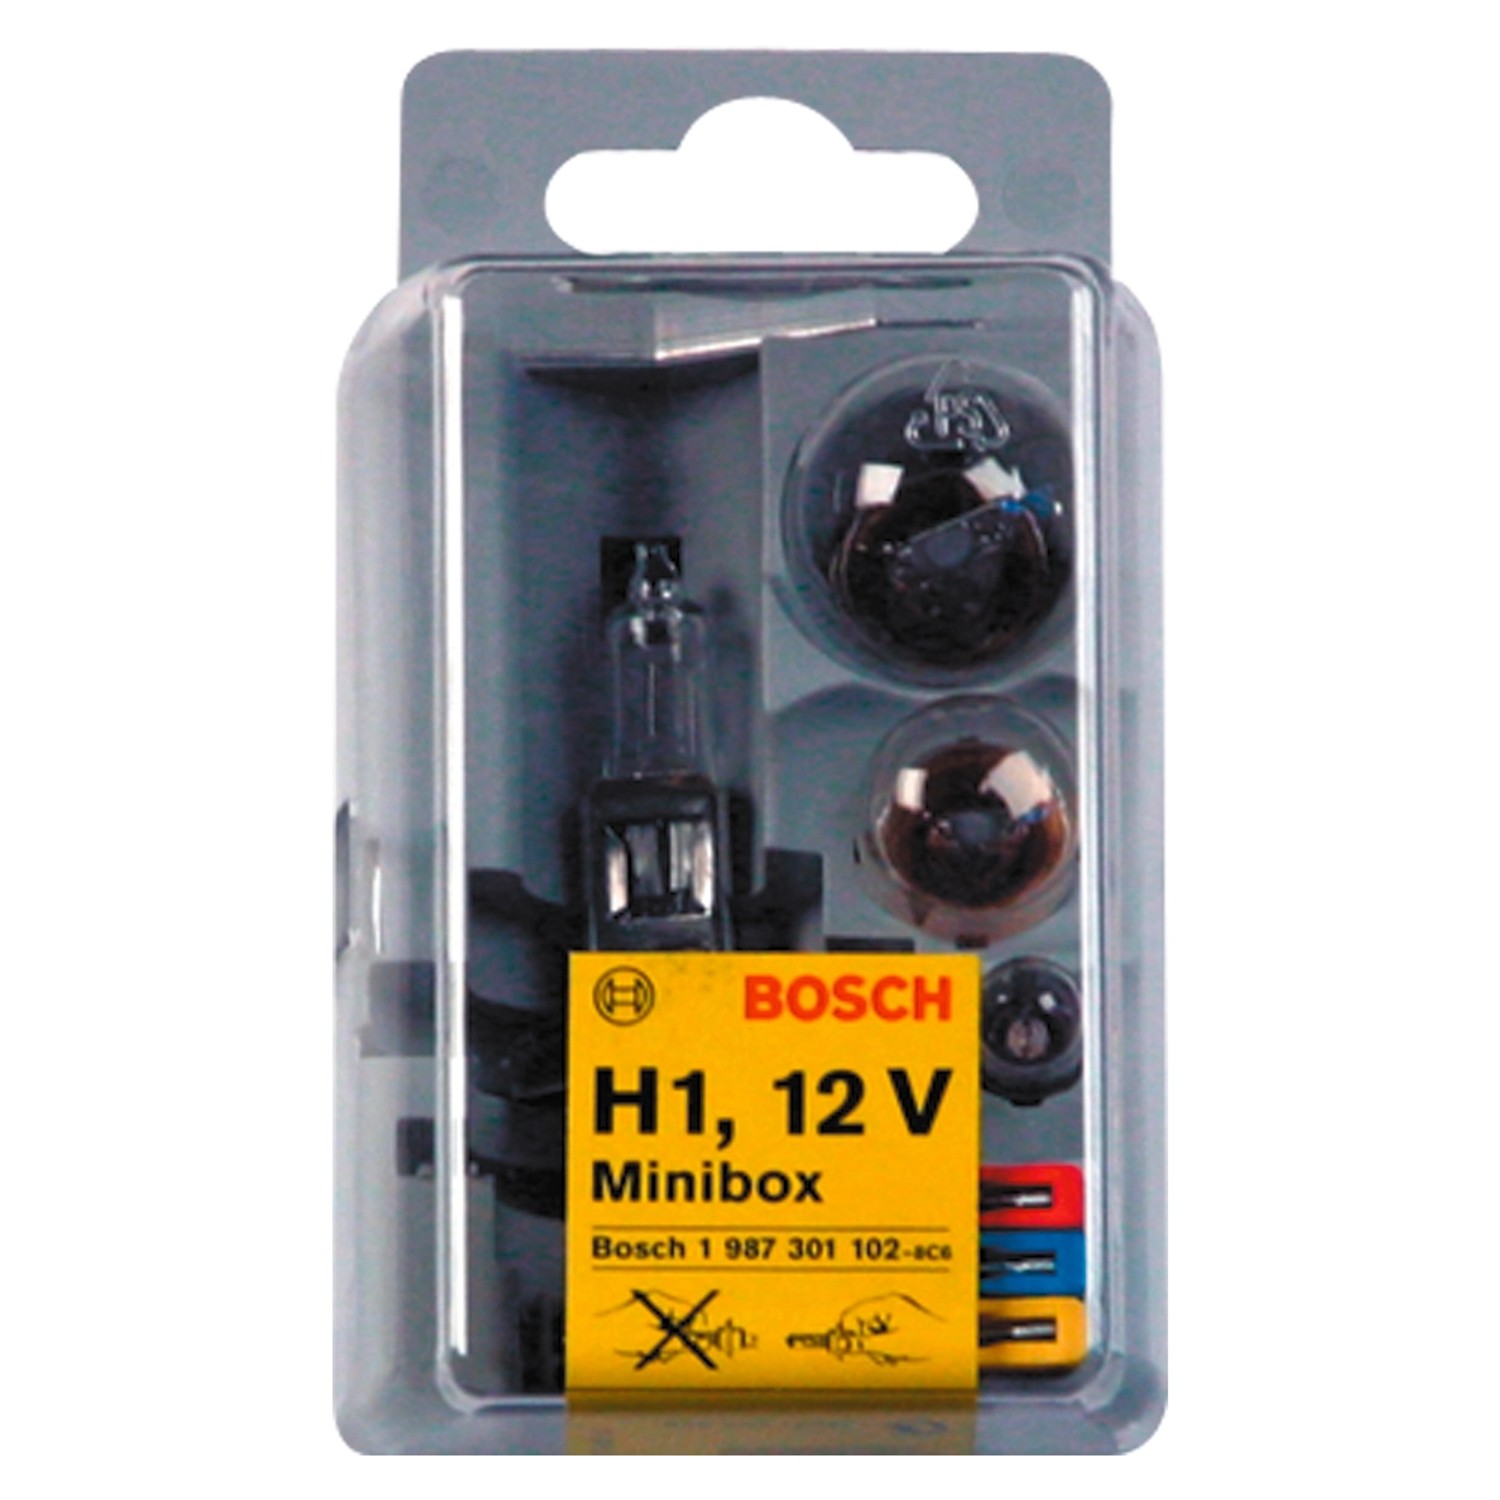 Bosch GLL Mini H1 Box